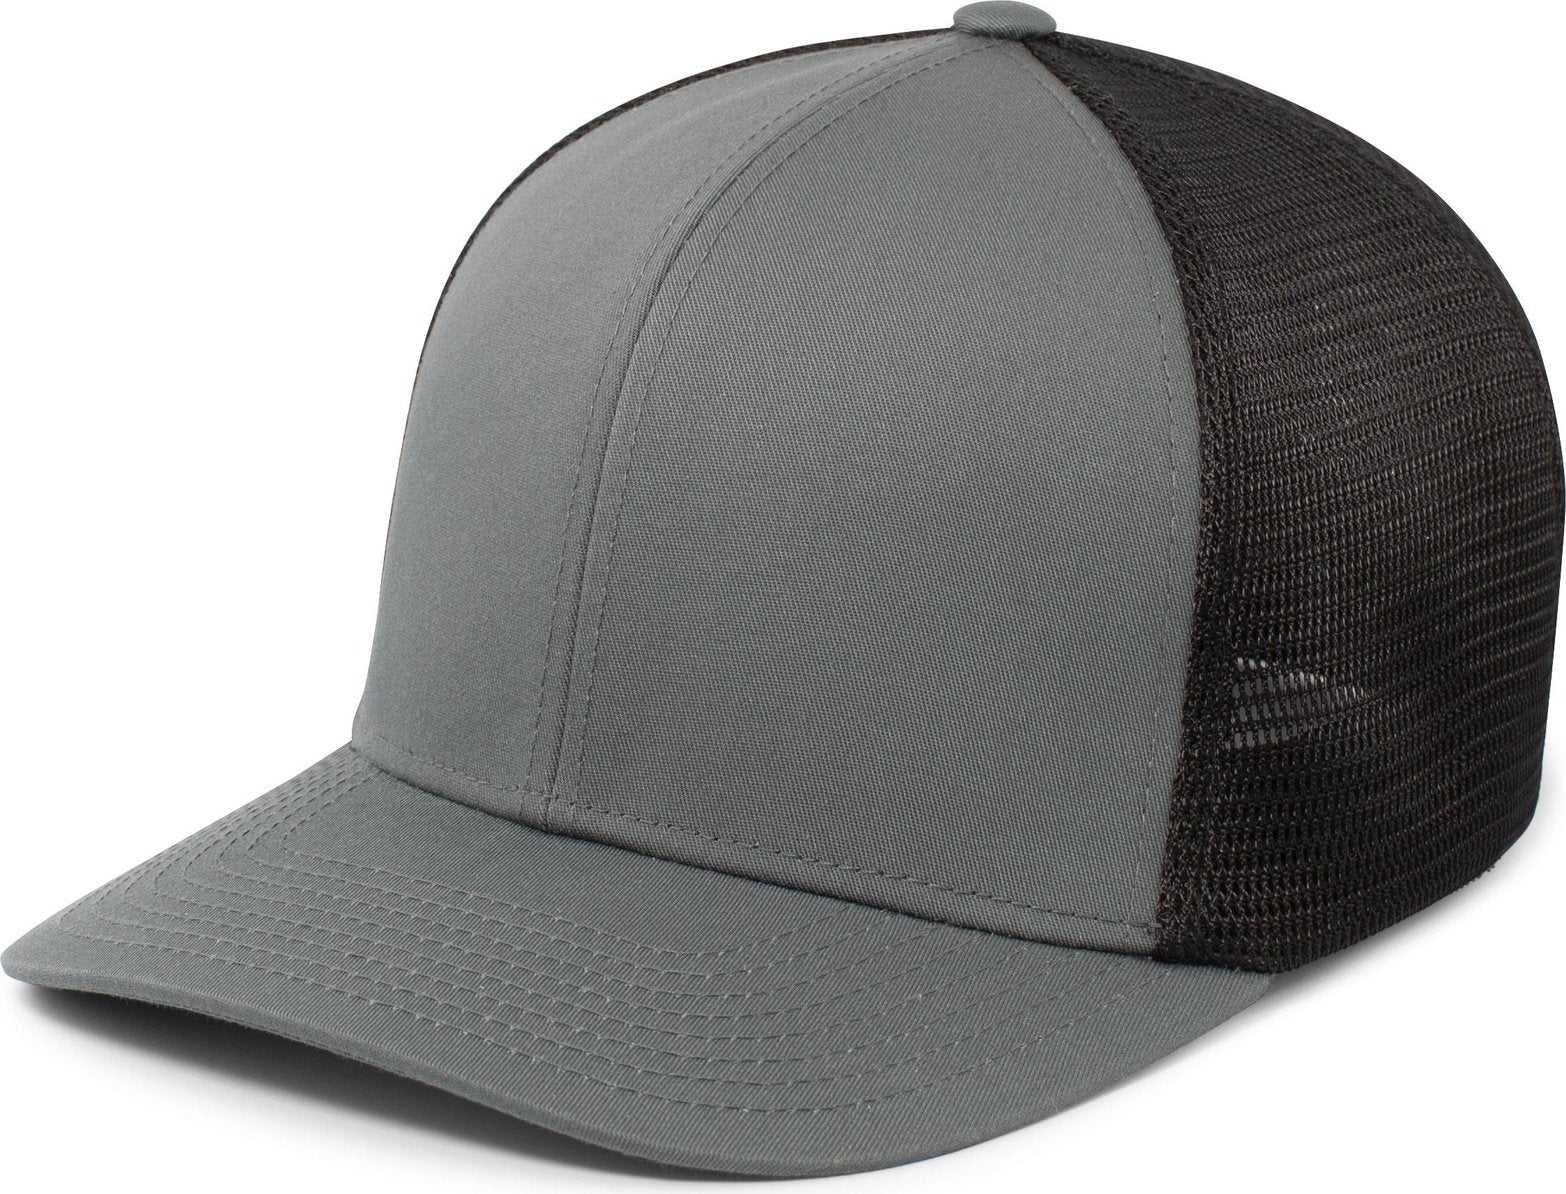 Pacific Headwear P401 Fusion Trucker Cap - Graphite Black Graphite - HIT a Double